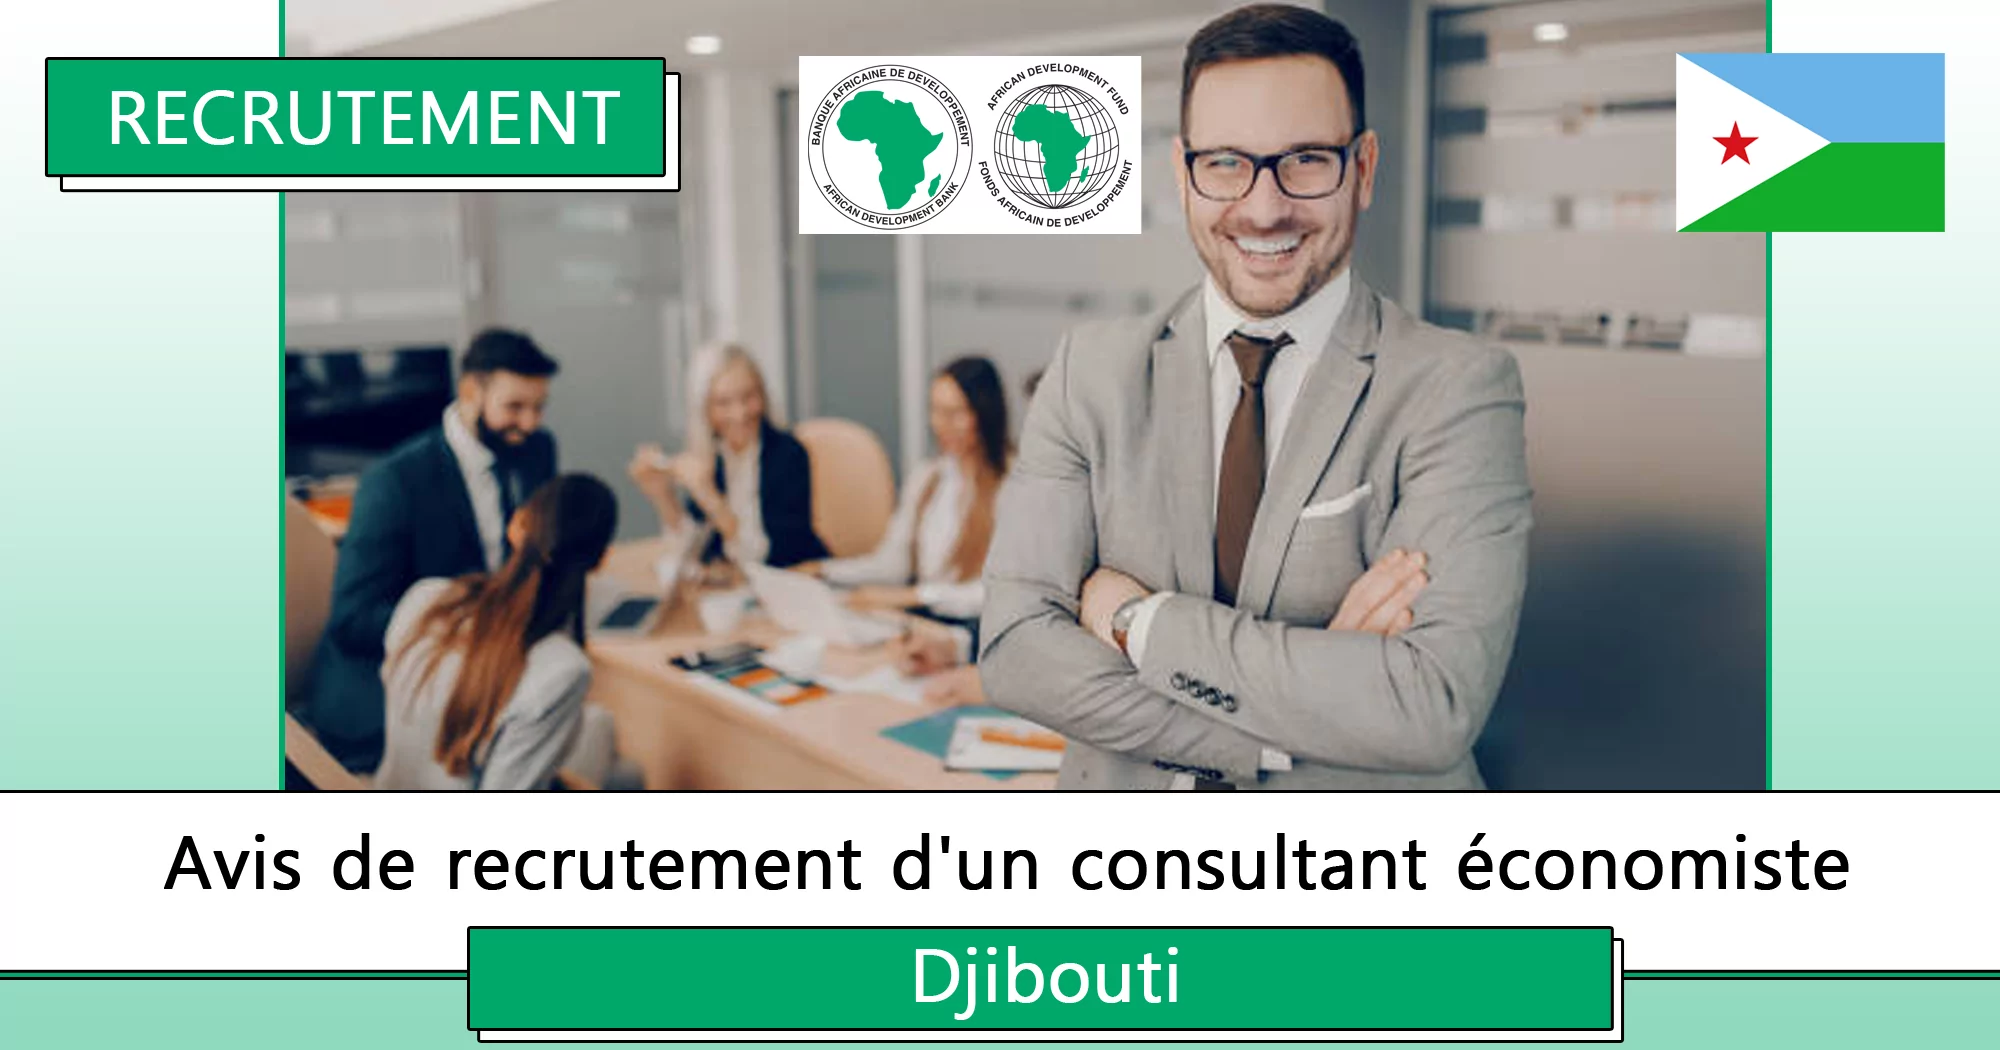 Avis de recrutement d’un consultant économiste, Djibouti